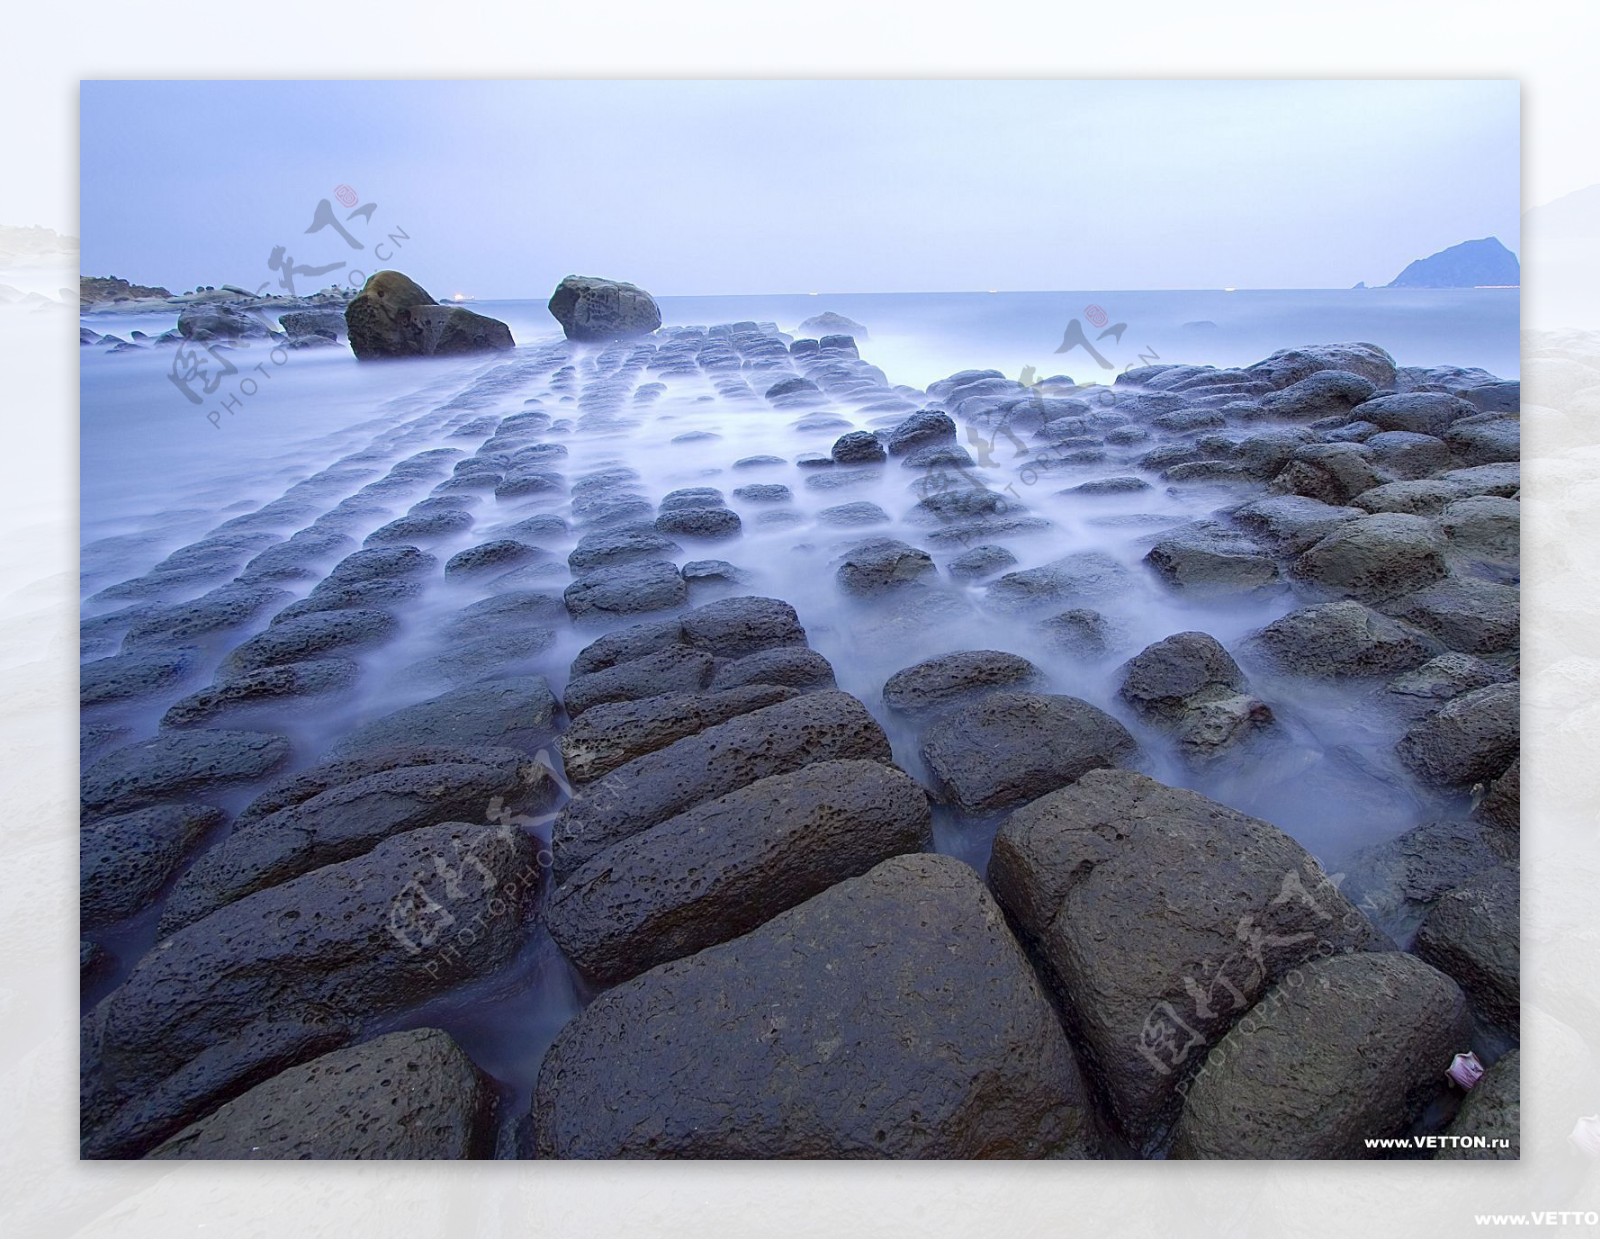 岩石海滩景观图片